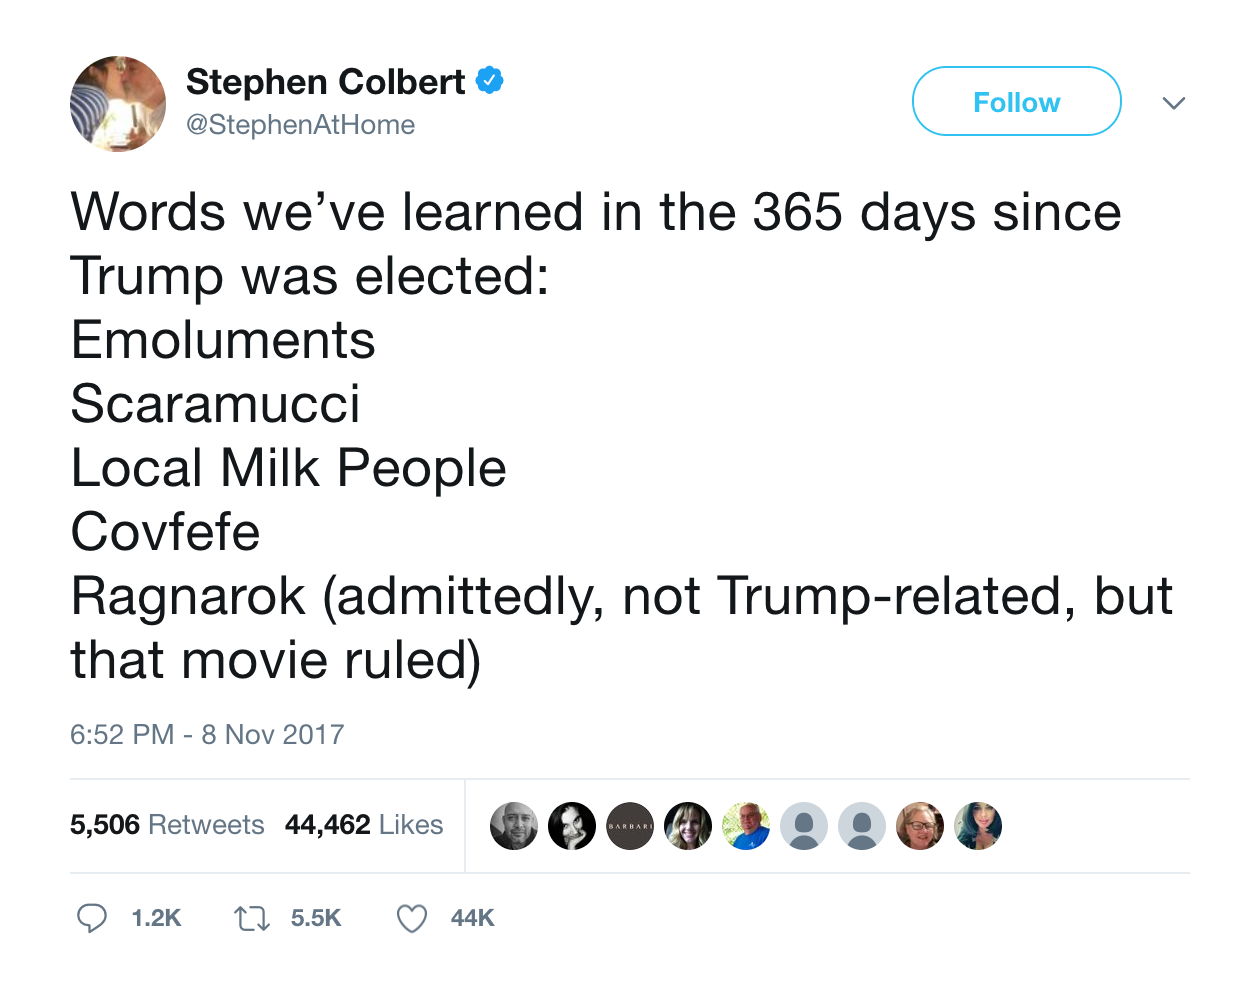 stephen-colbert-words-weve-learned-in-365-days-since-trump-was-elected-emoluments-scaramucci-covfefe-tweet-tee-tweets